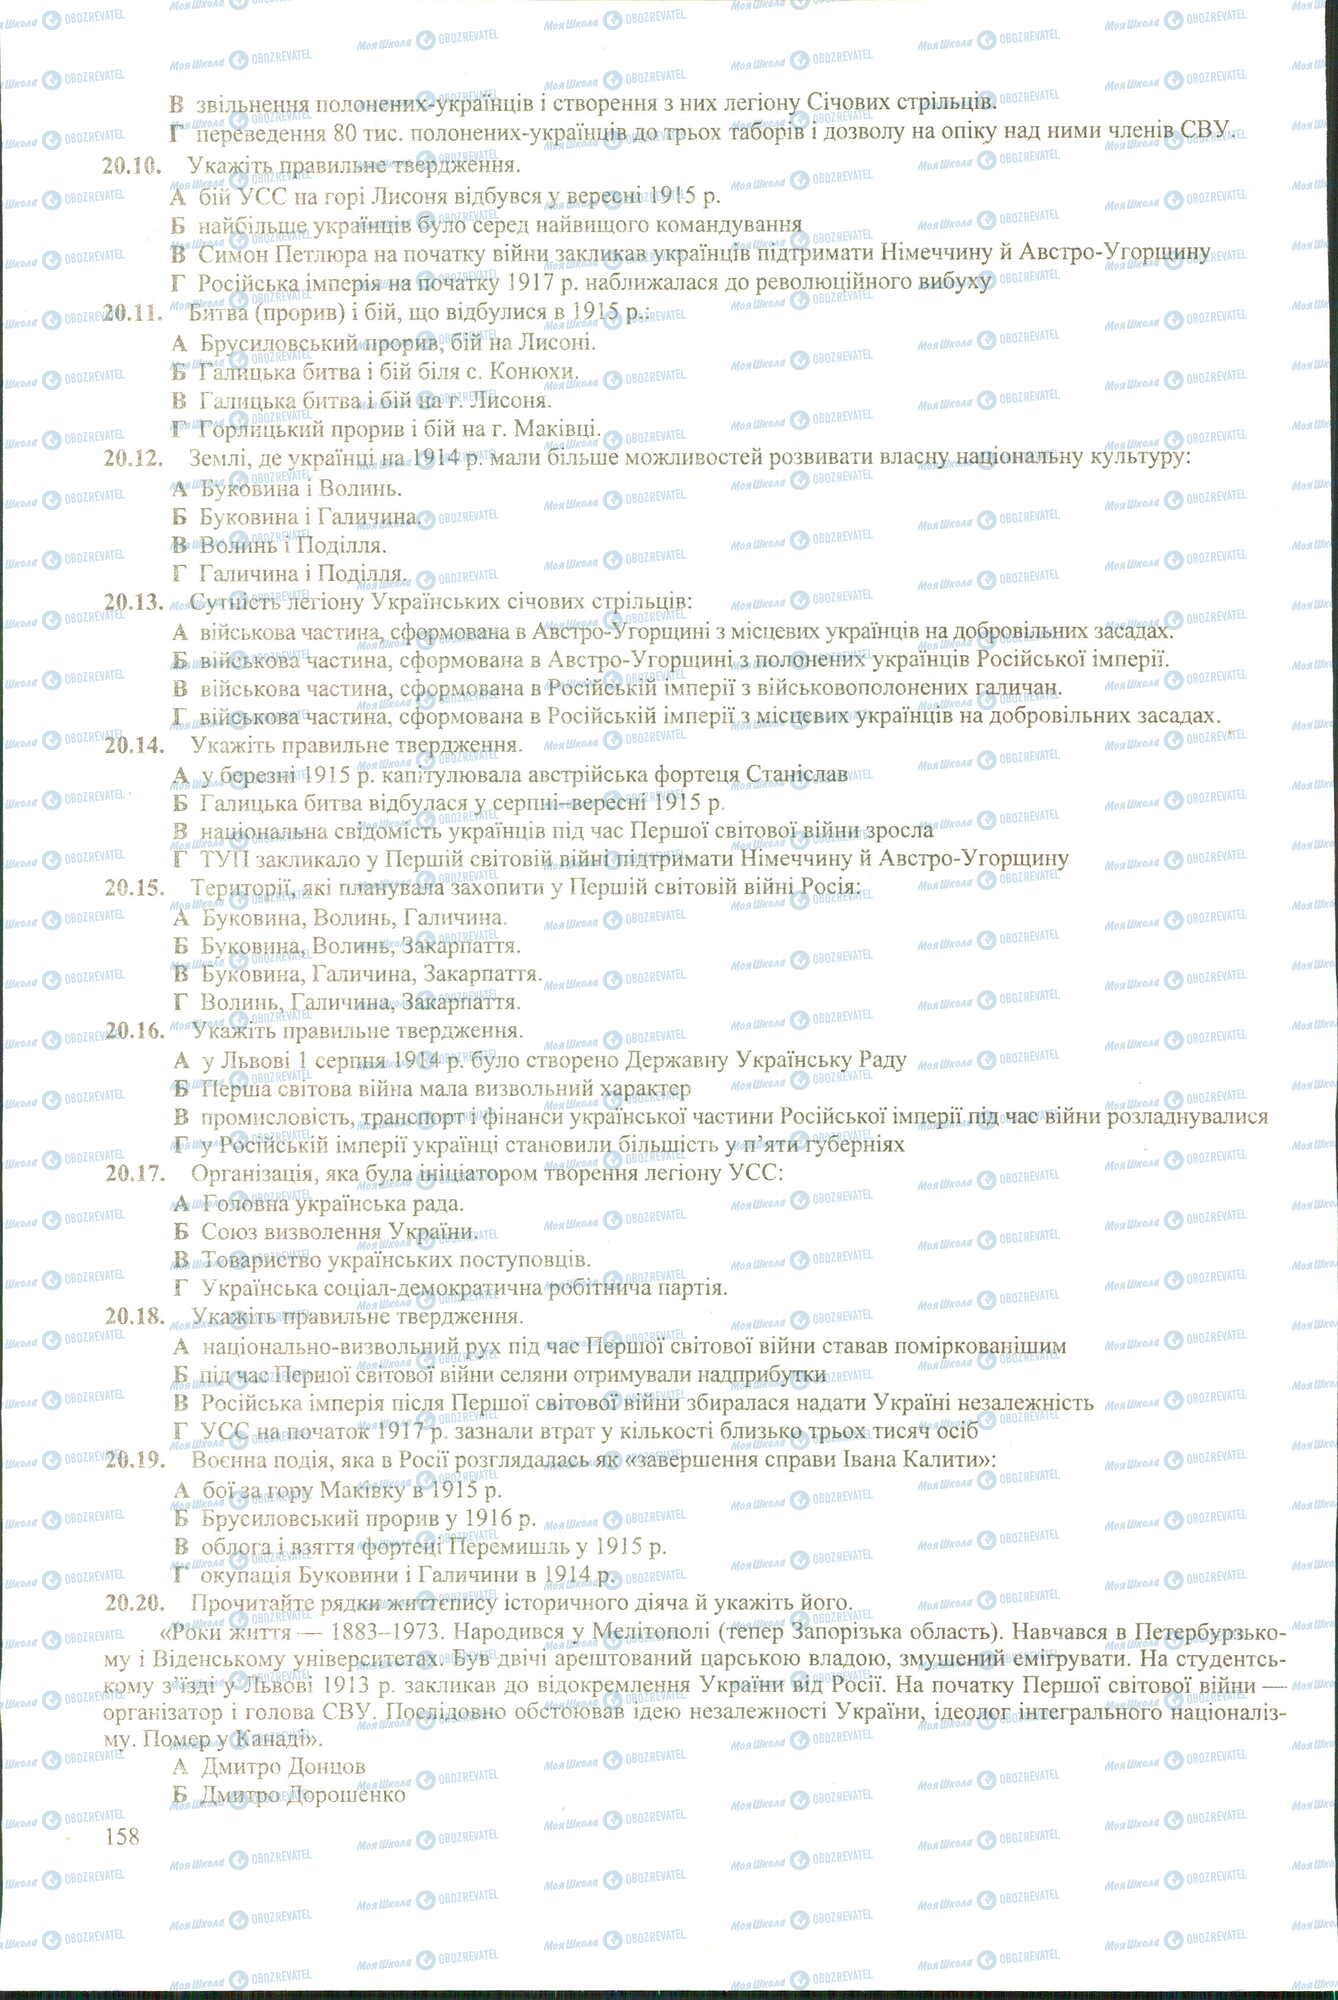 ЗНО История Украины 11 класс страница 10-20